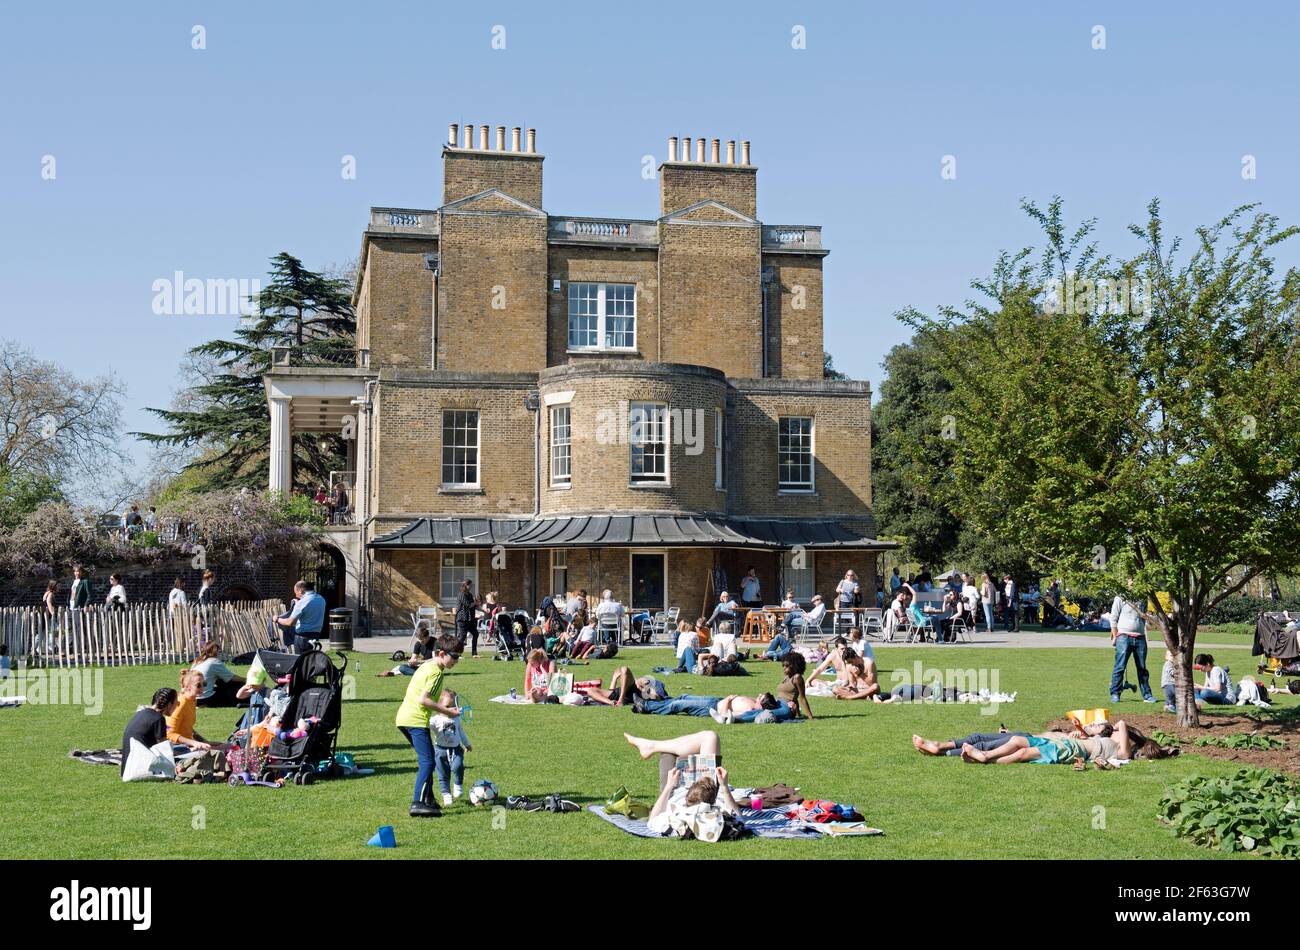 Les gens qui se trouvent sur l'herbe sous le soleil, à côté de la maison Clissode, parc Clissode Stoke Newington Banque D'Images